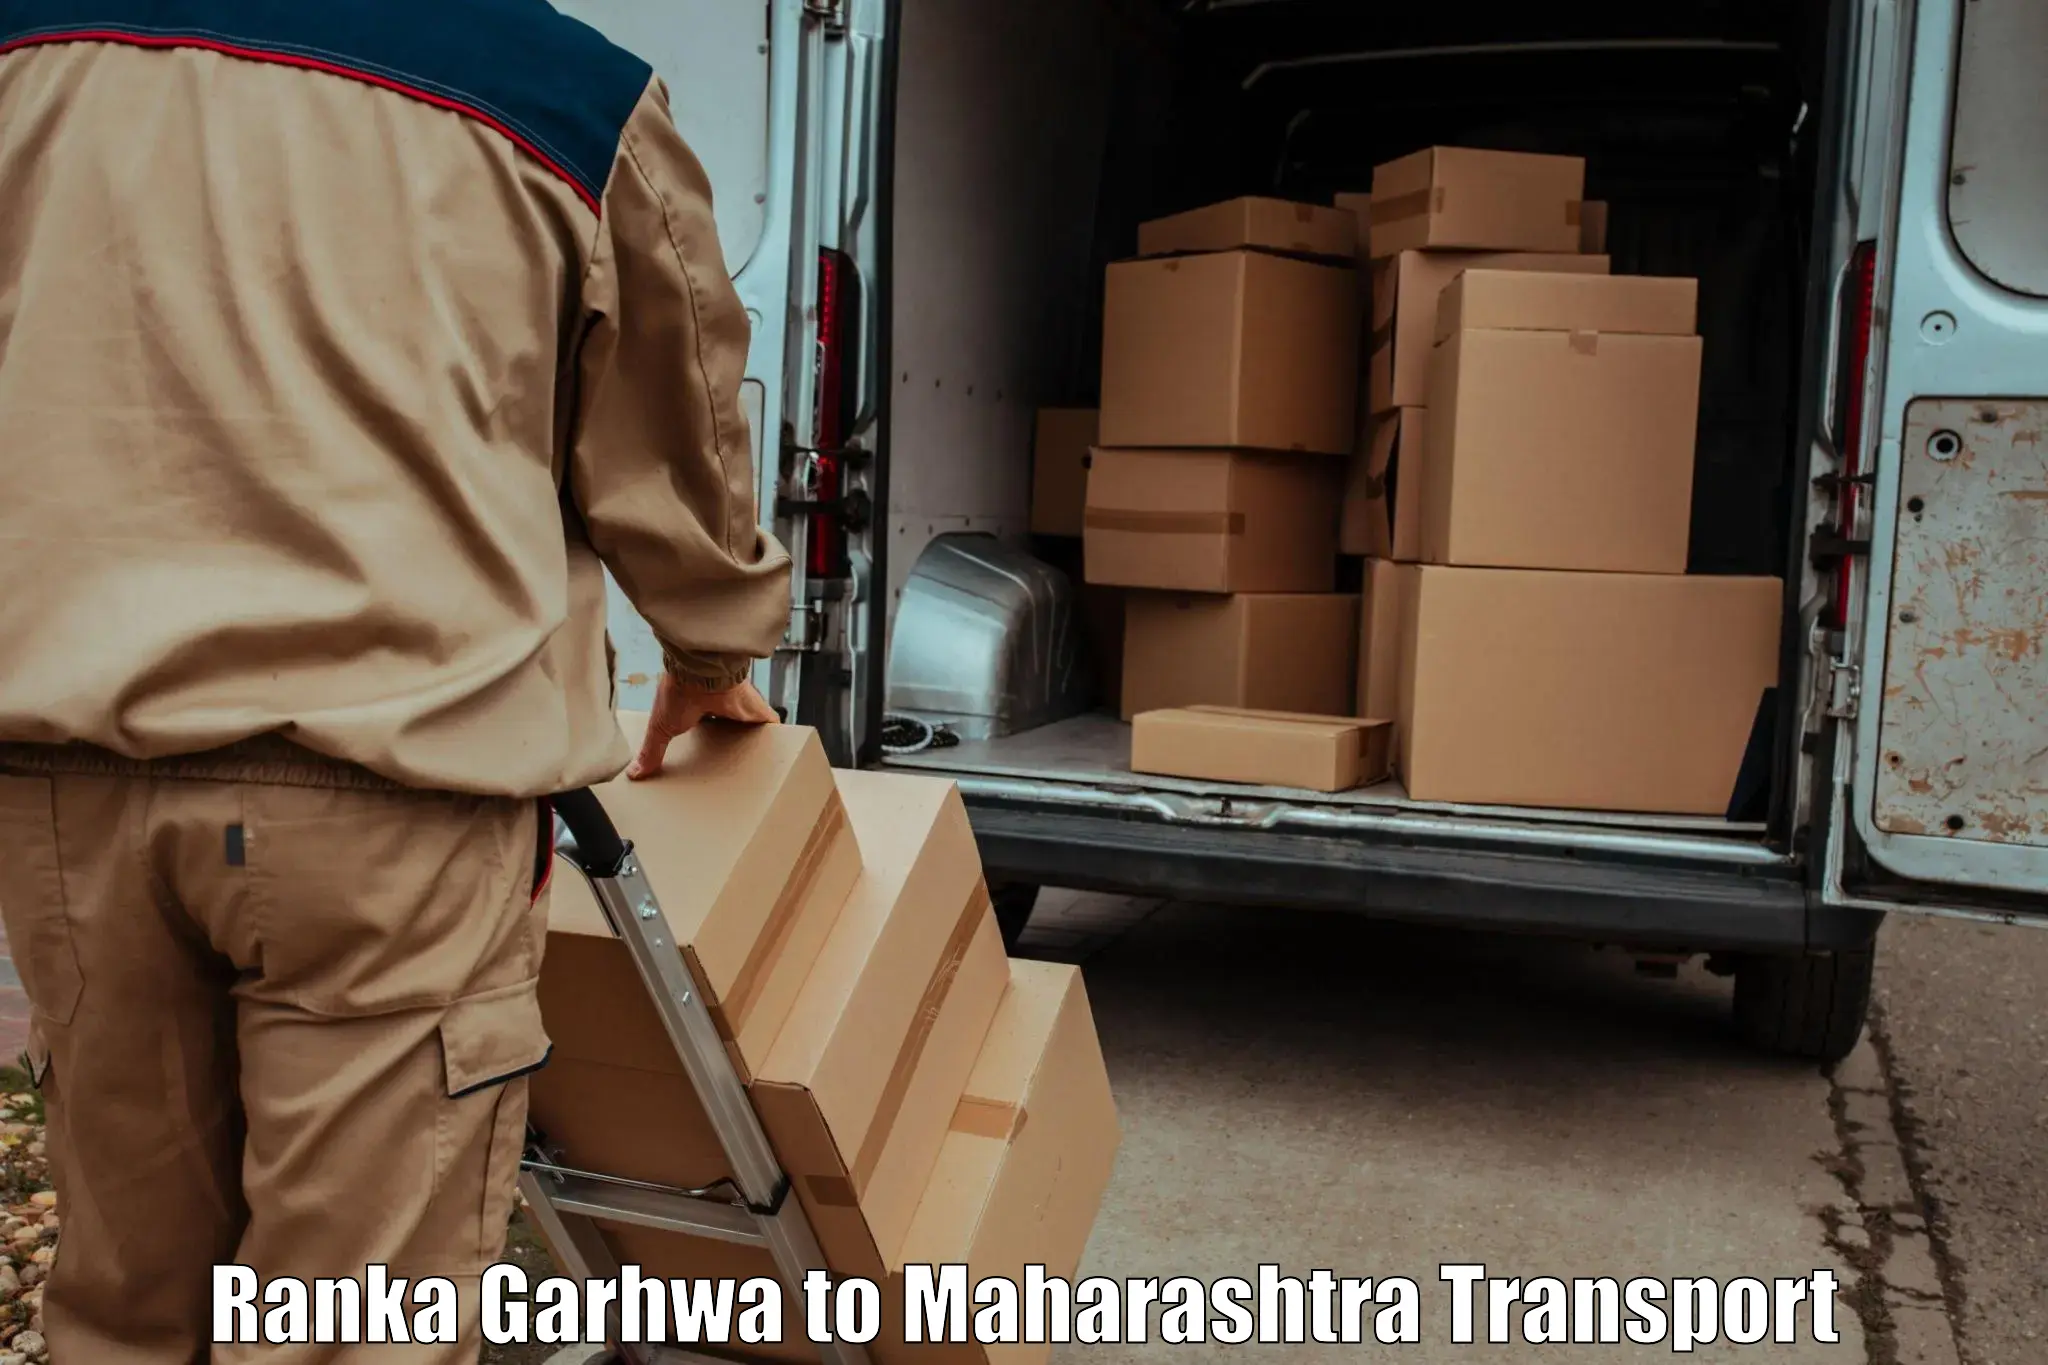 Furniture transport service Ranka Garhwa to Rajapur